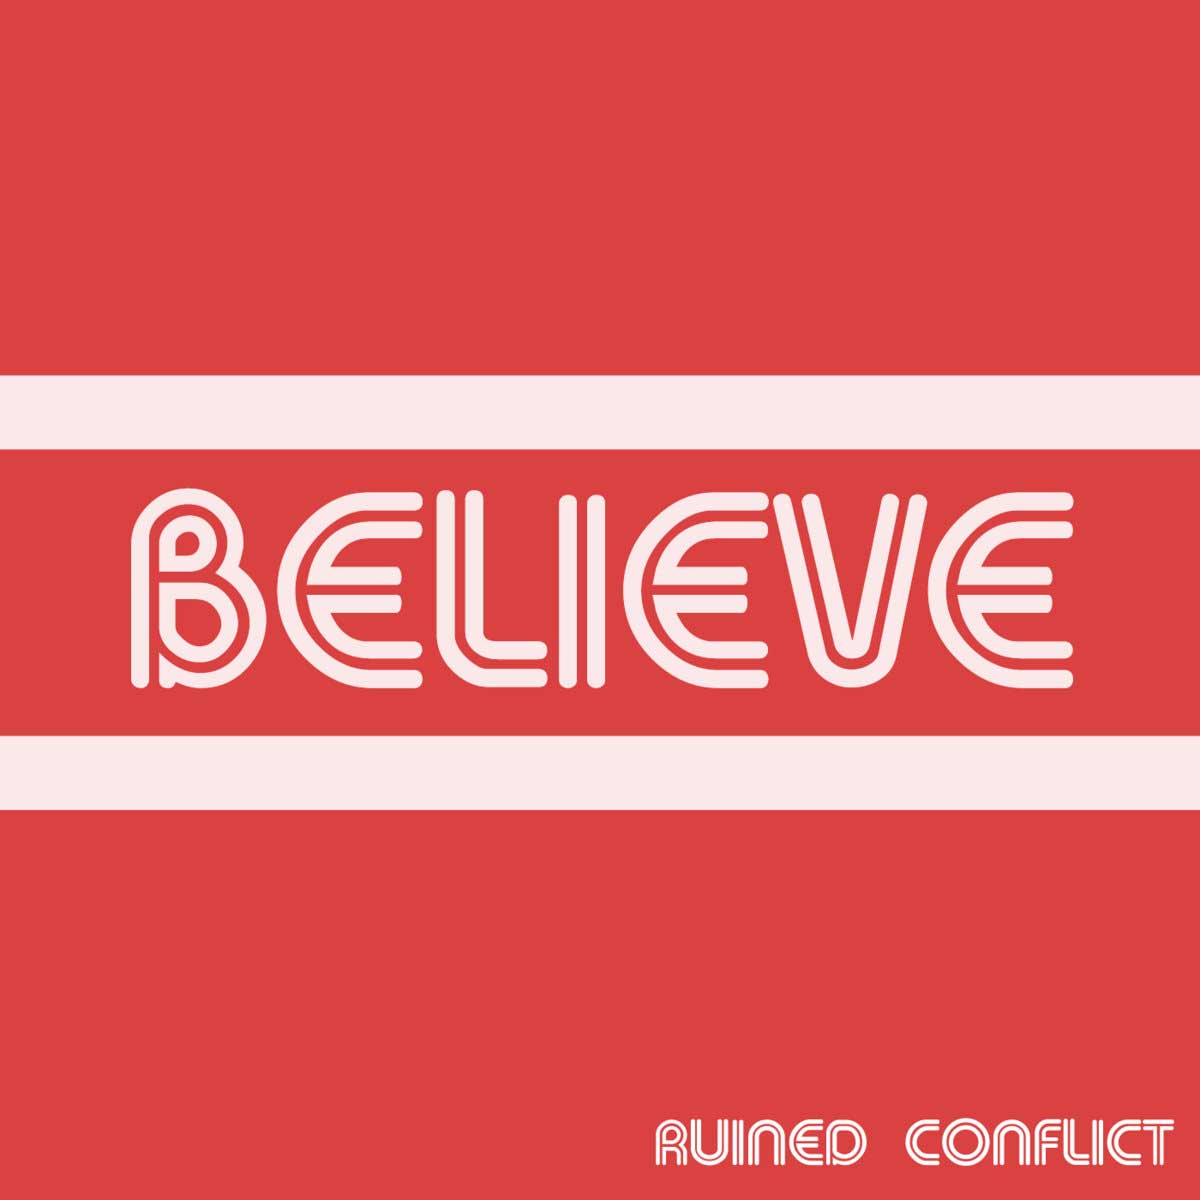 Ruined Conflict - Believe - Ruined Conflict - Believe